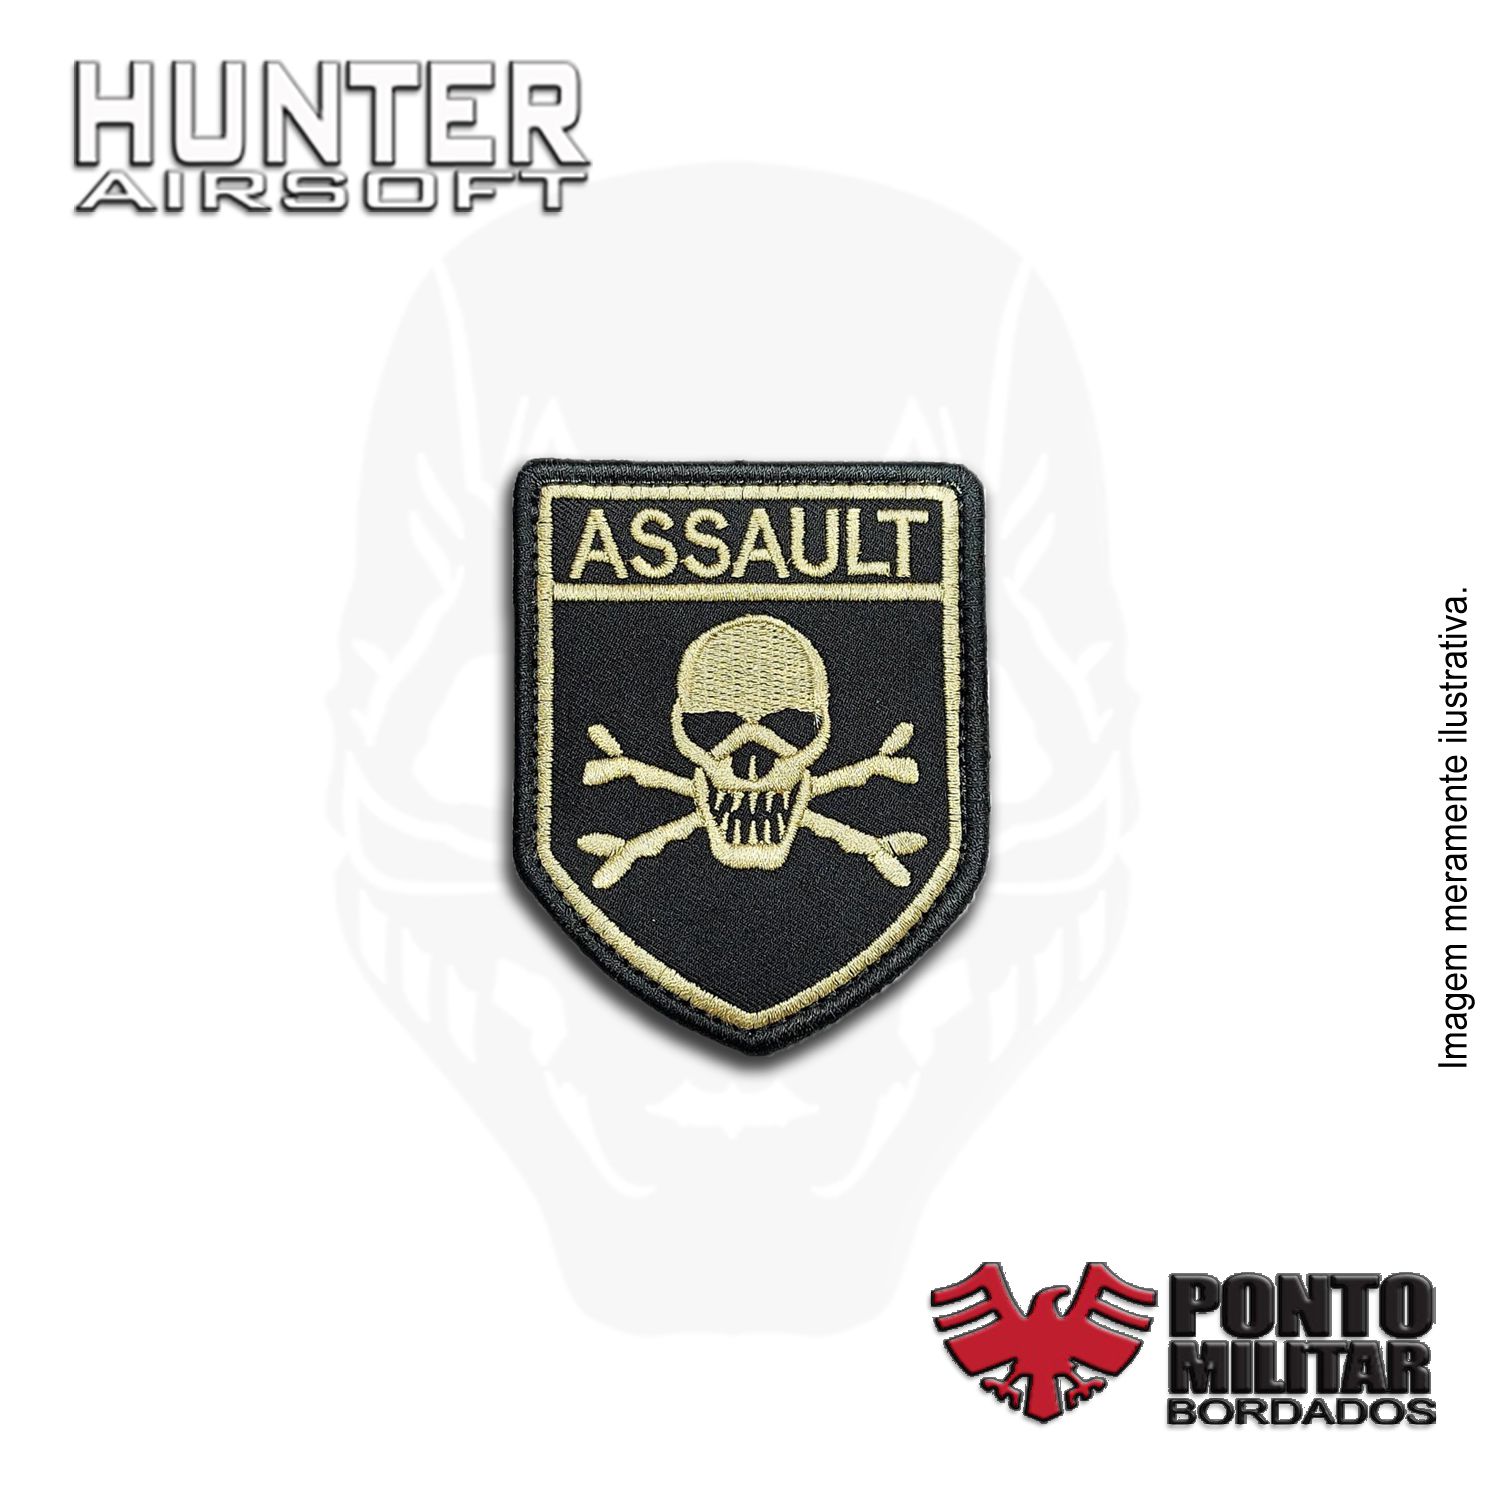 Patch Assault Caveira bordado - Ponto Militar - Hunter Airsoft